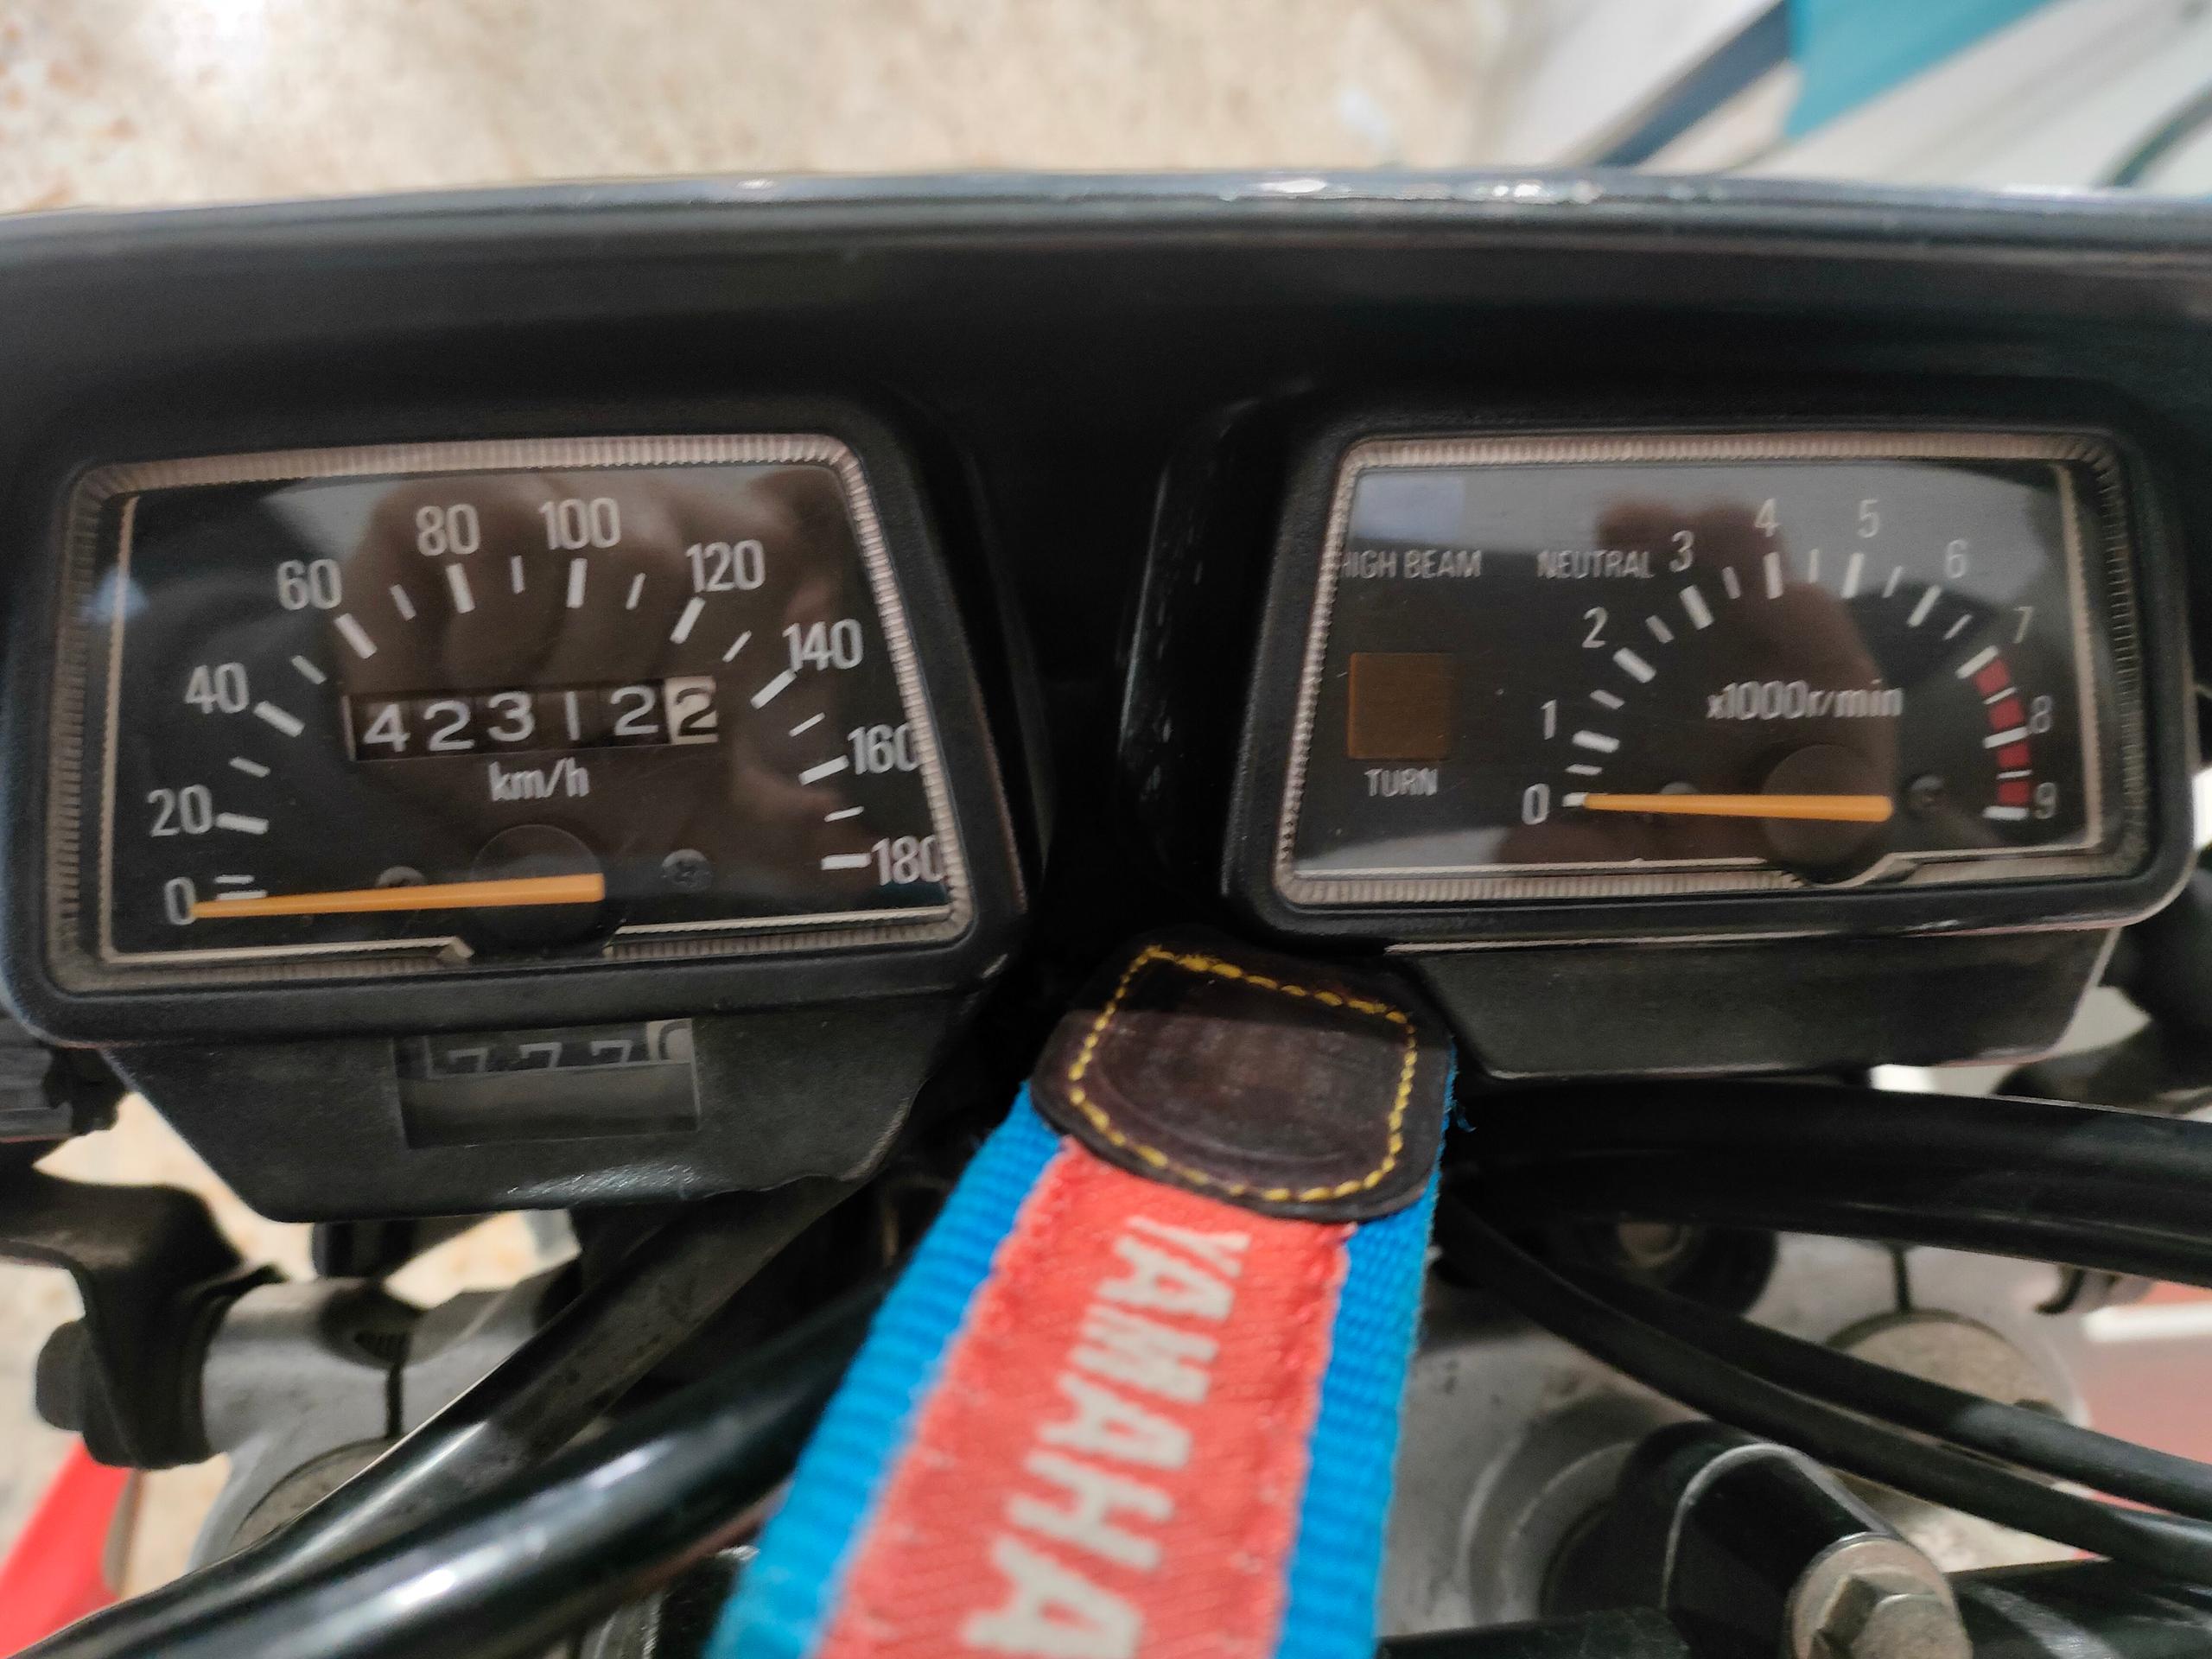 Yamaha XT600 1990 Km 42318